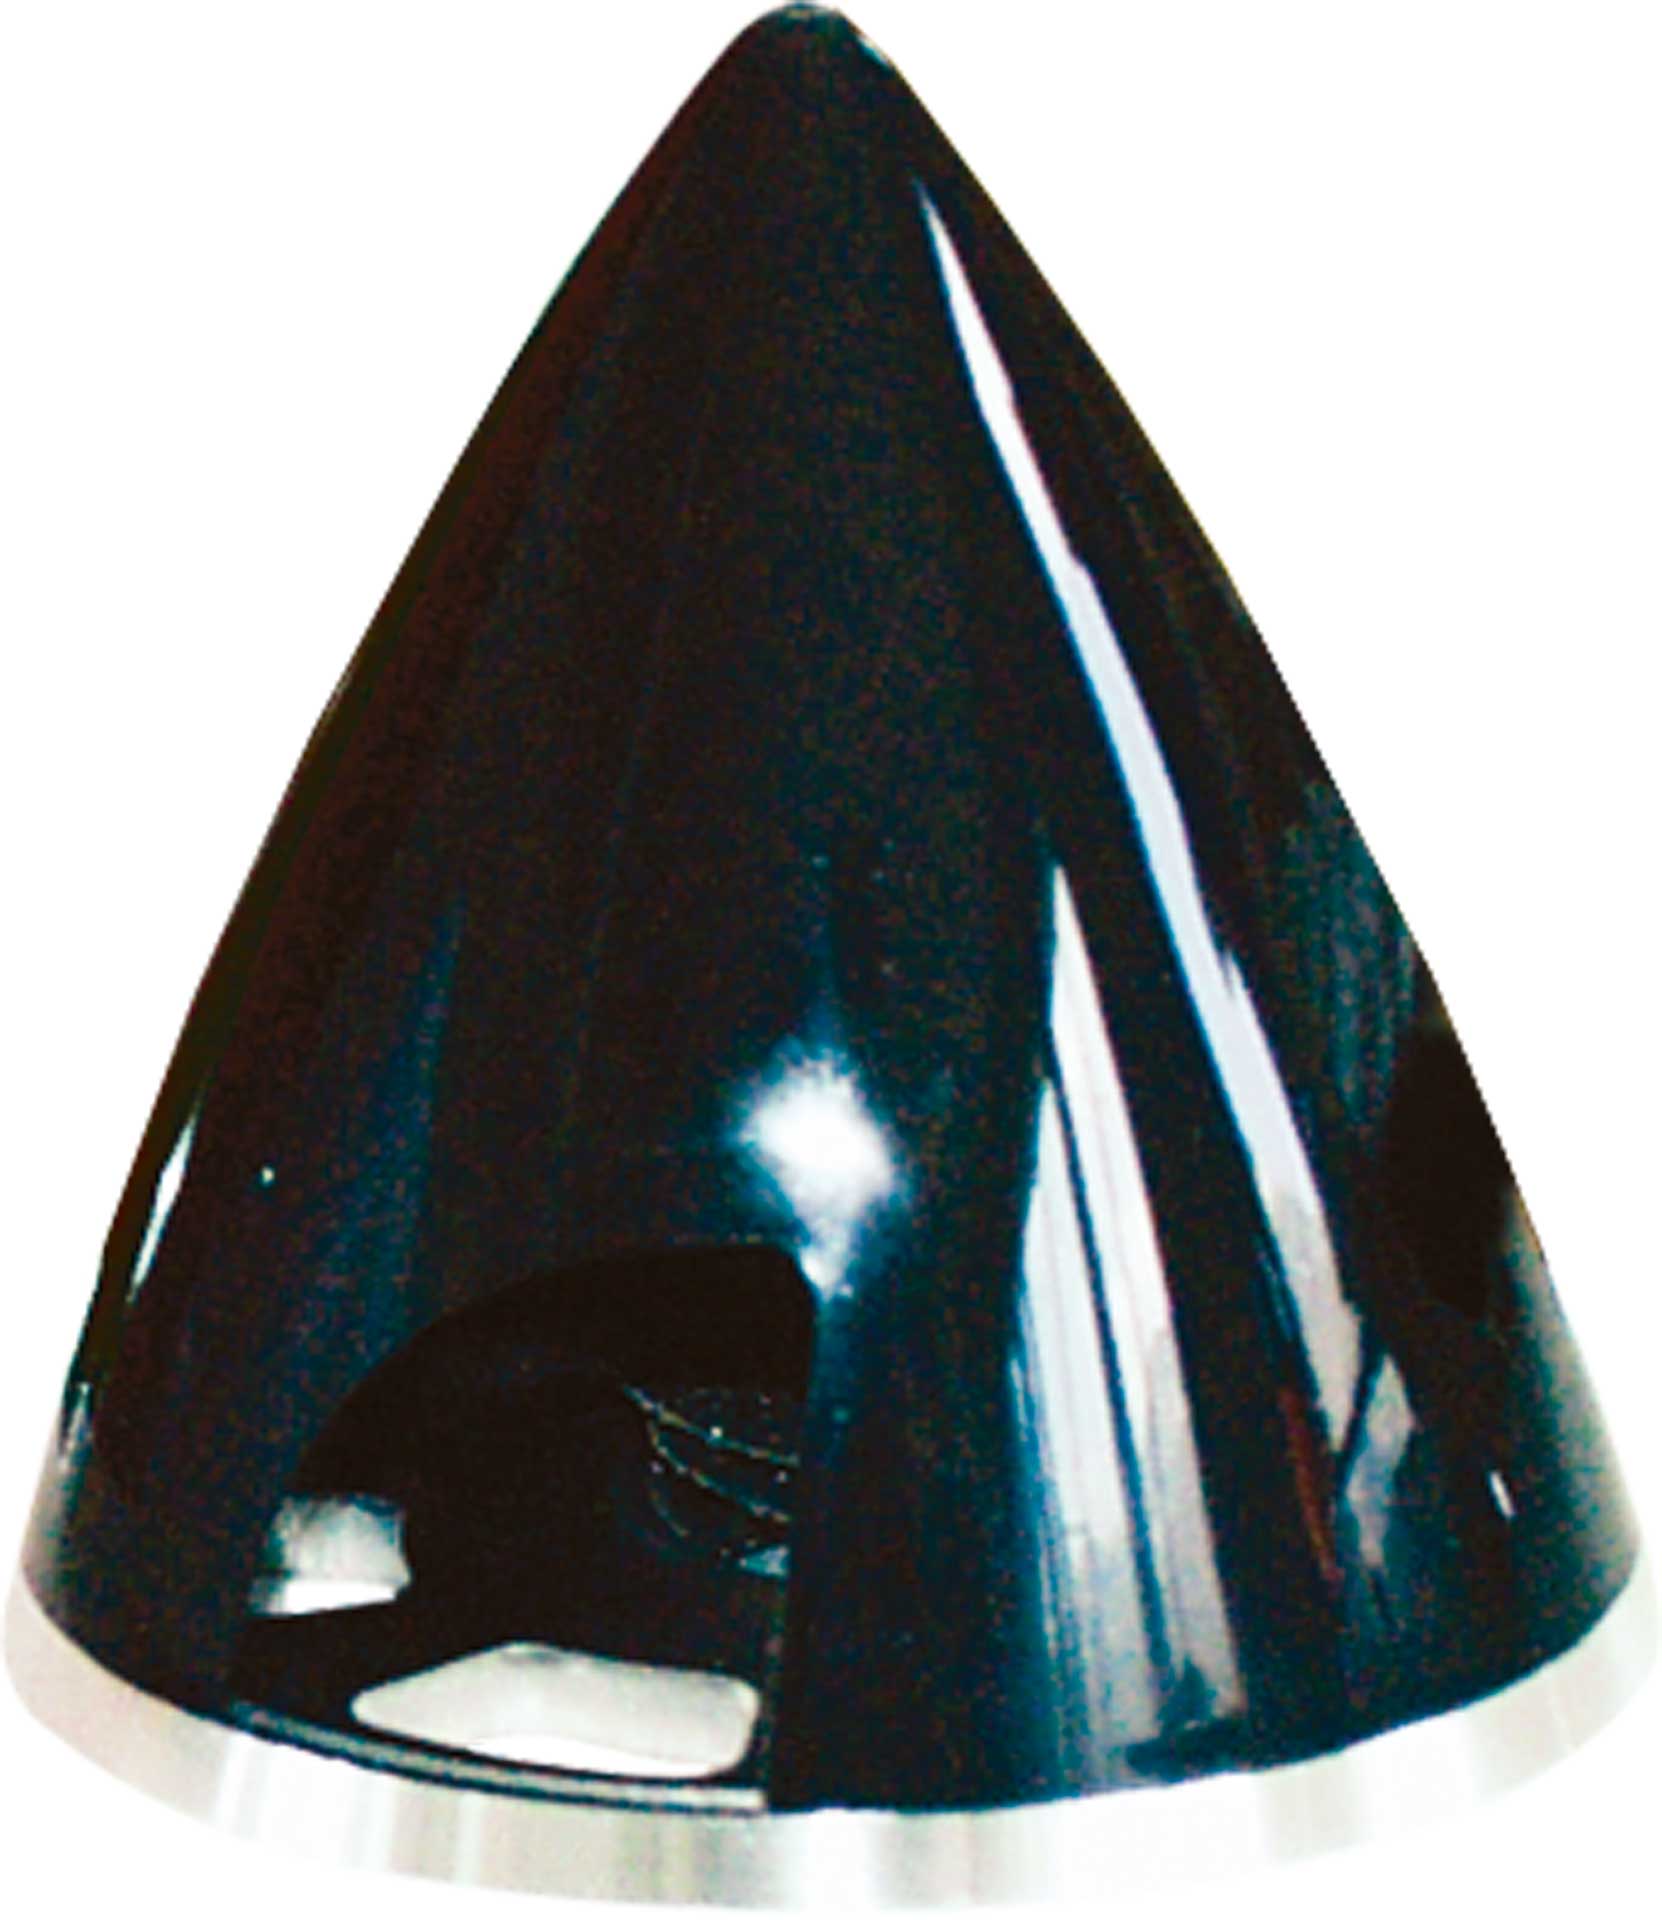 ARK Spinner Profi 57MM black plastic with aluminum base plate